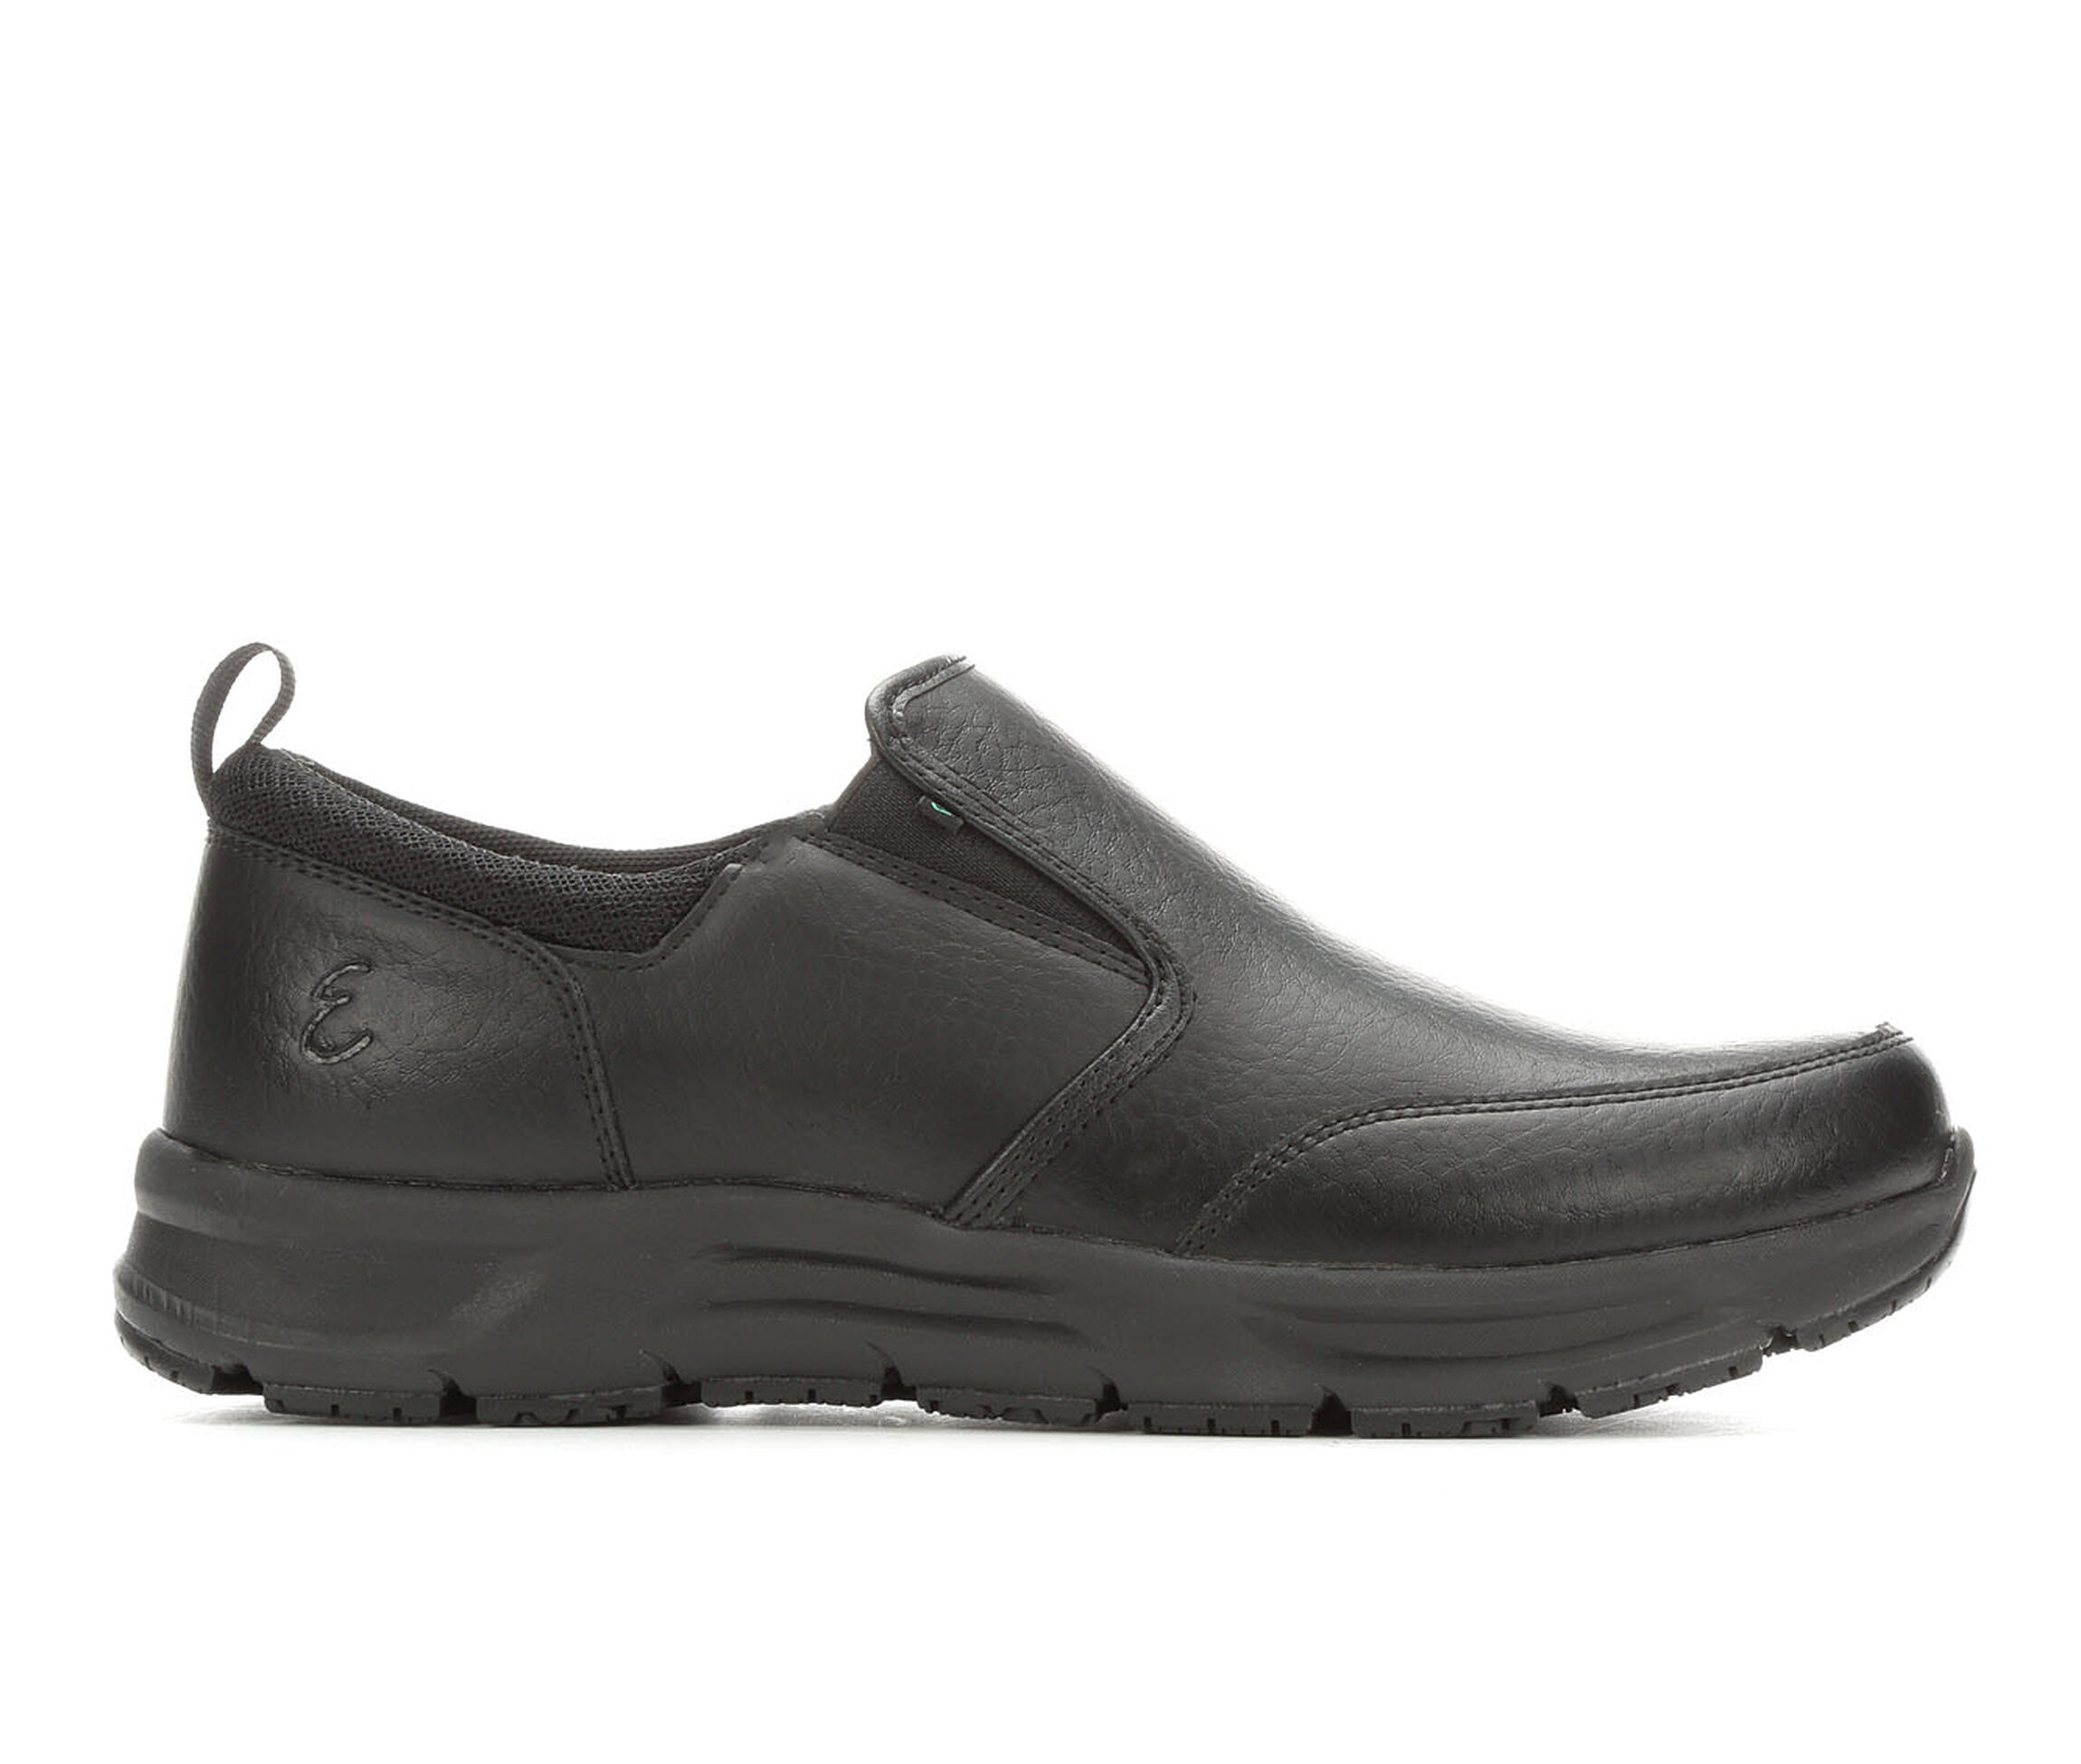 Emeril Lagasse Quarter Slip On Men's Boots (Black Leather)